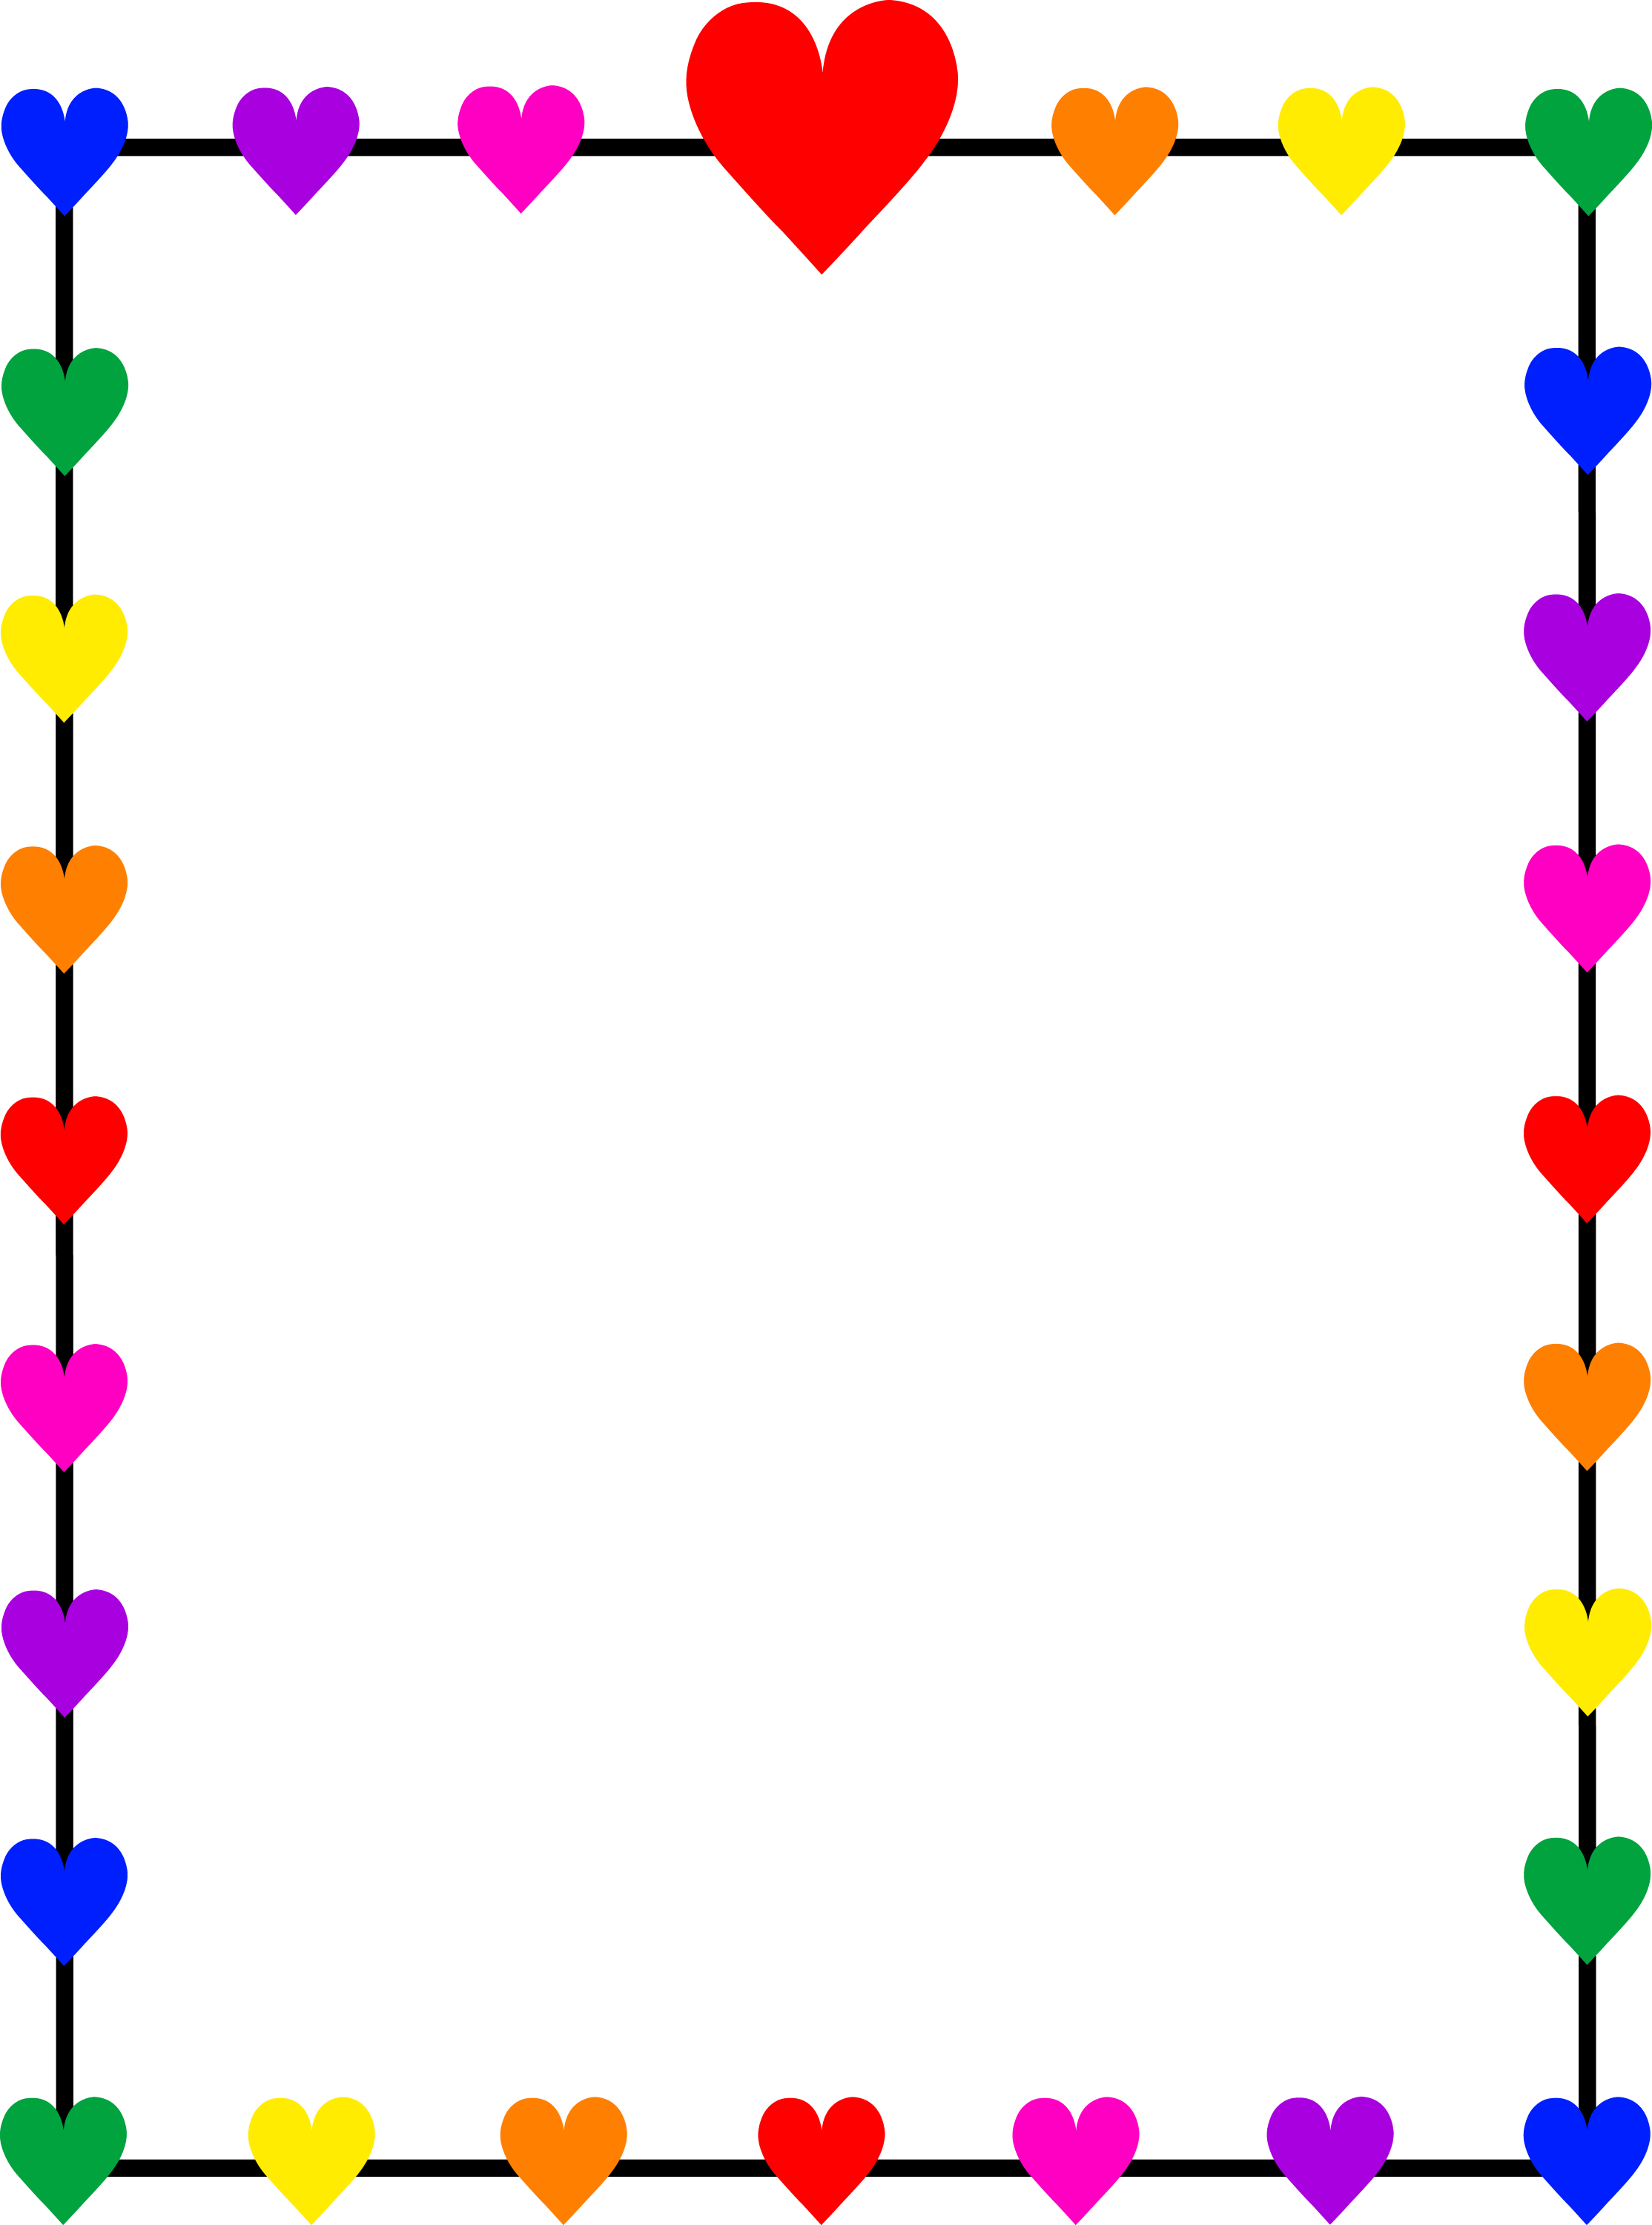 Rainbow Hearts Border Frame Free Clip Art